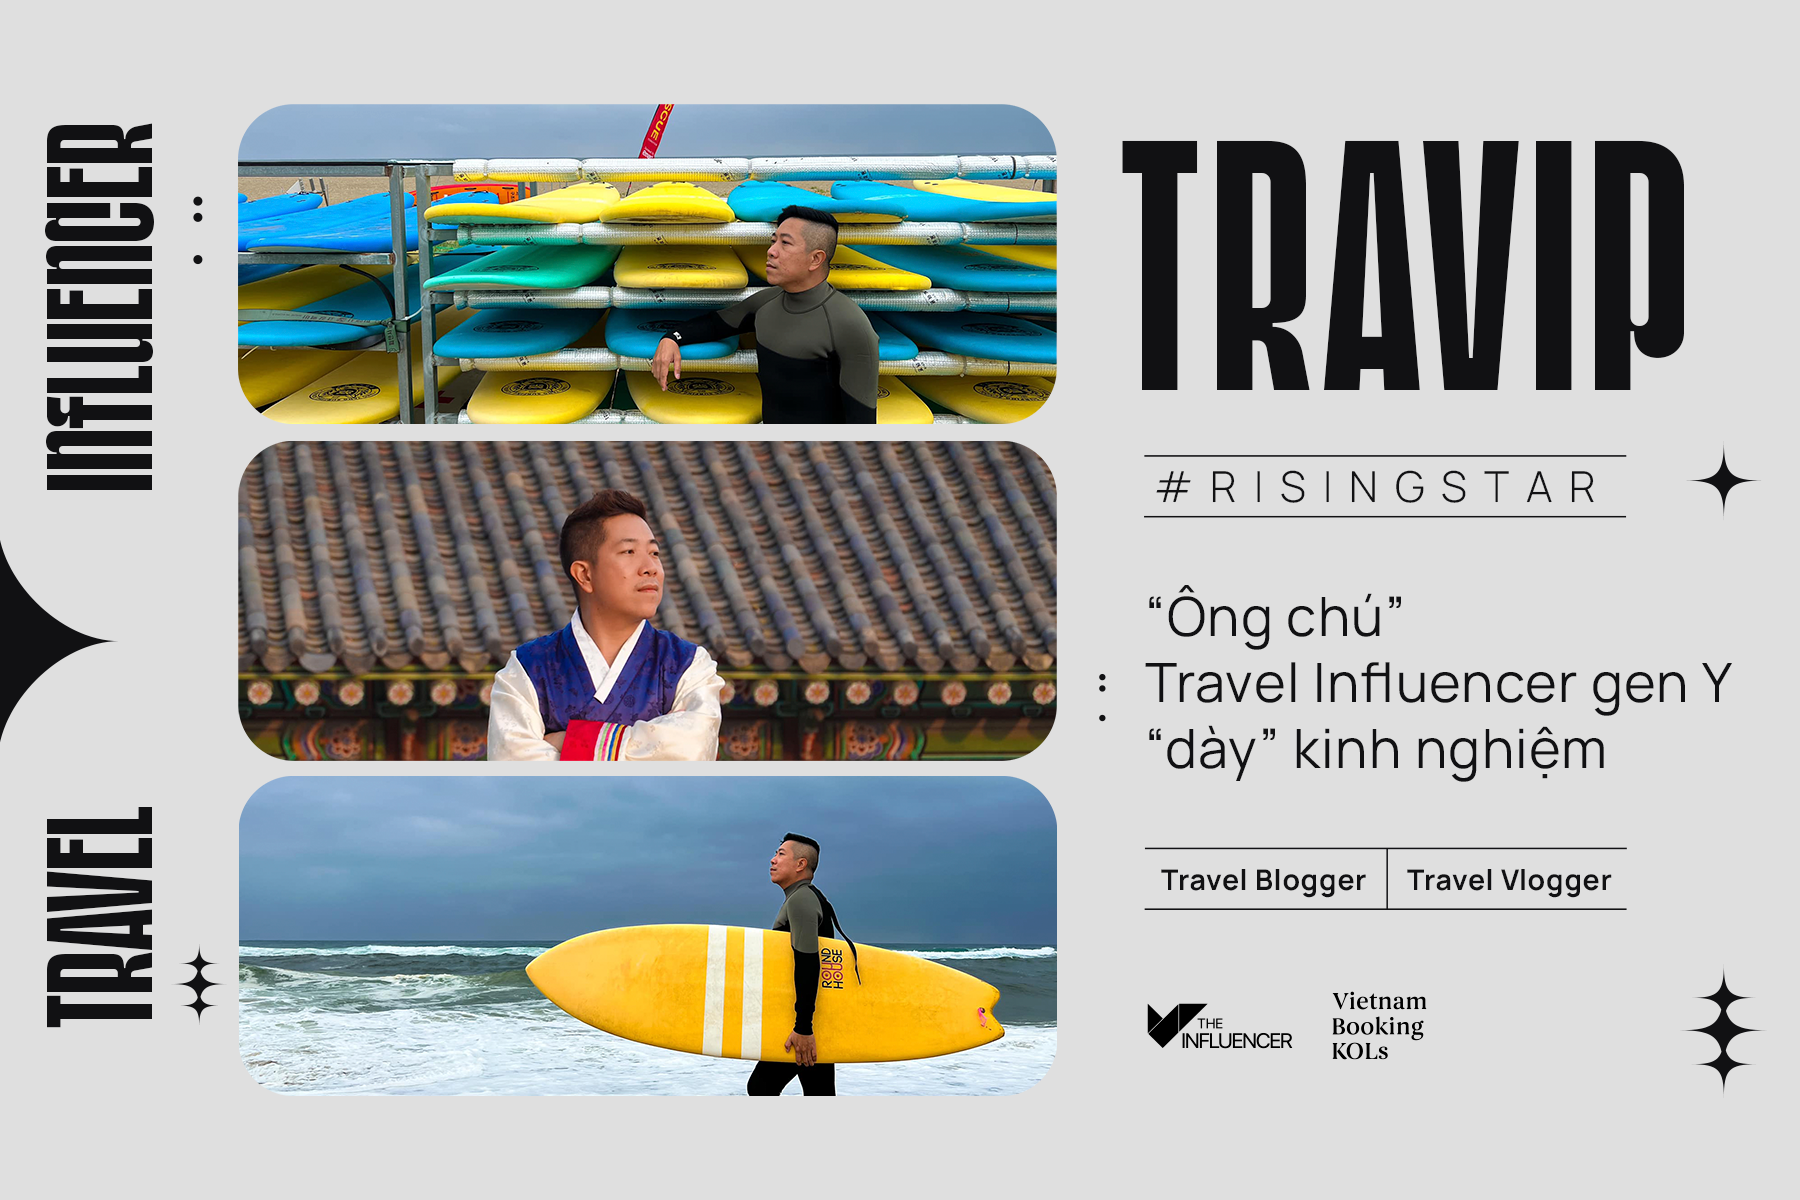 #Risingstar Travip - “Ông chú” Travel Influencer gen Y “dày” kinh nghiệm